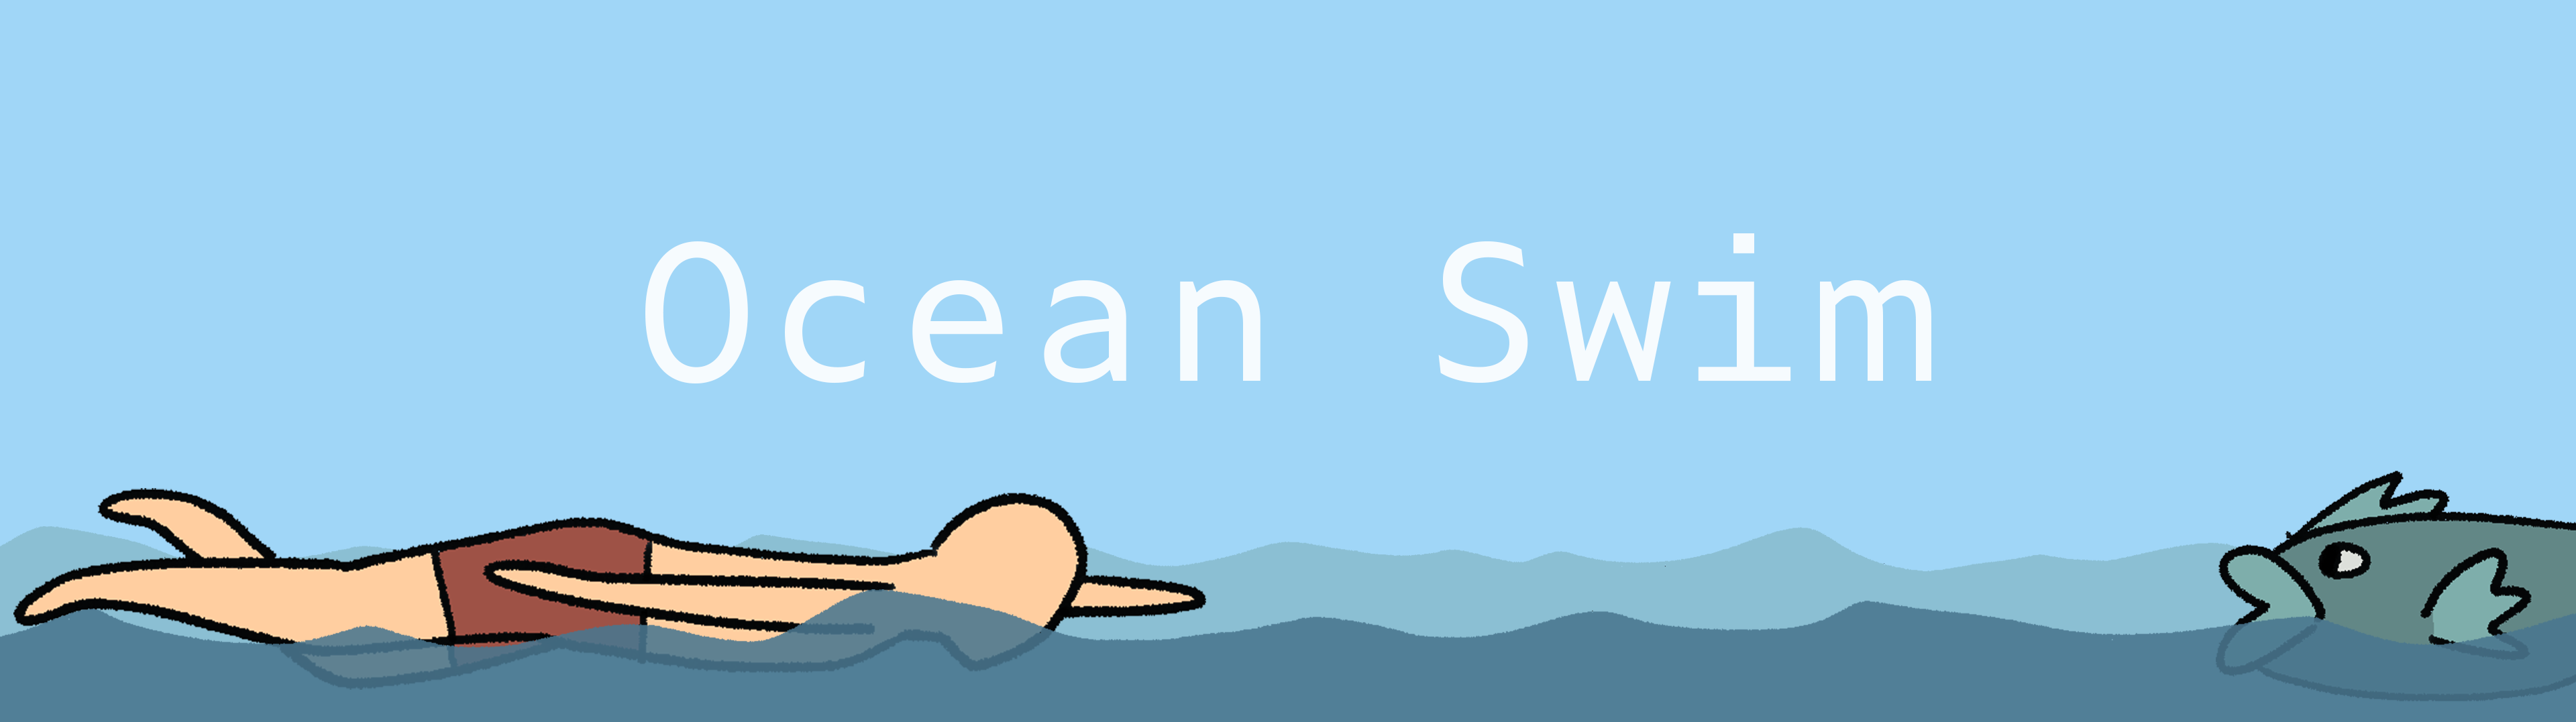 Ocean Swim Prototype